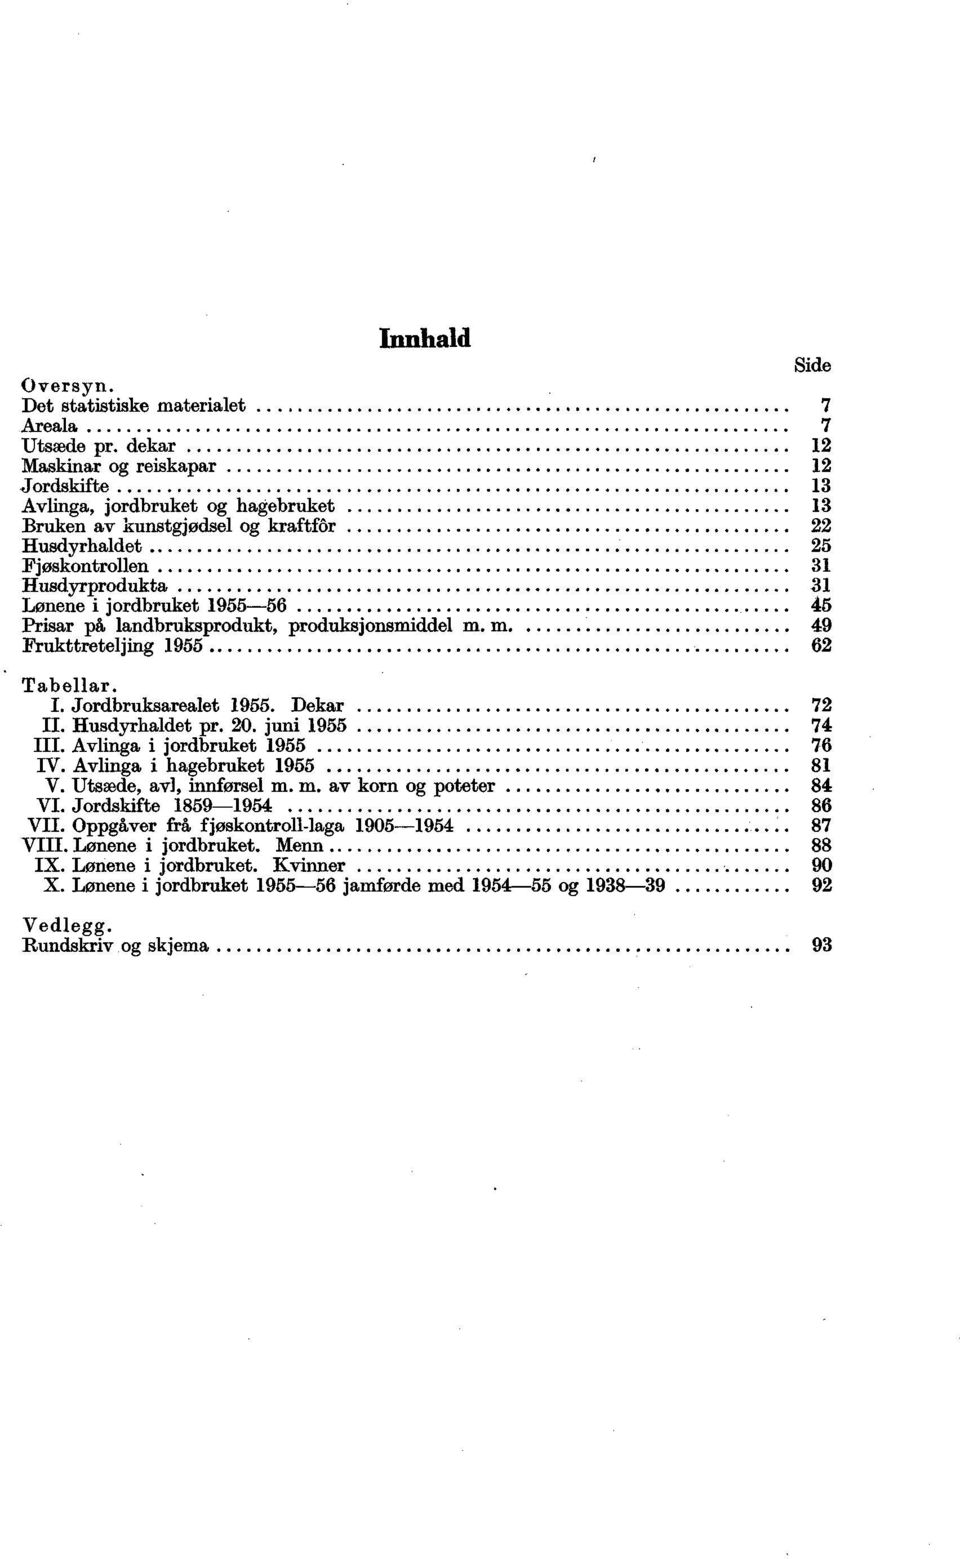 1955-56 45 Prisar på landbruksprodukt, produksjonsmiddel m. m 49 Frukttreteljing 1955 62 Tabellar. I. Jordbruksarealet 1955. Dekar 72 II. Husdyrhaldet pr. 20. juni 1955 74 III.